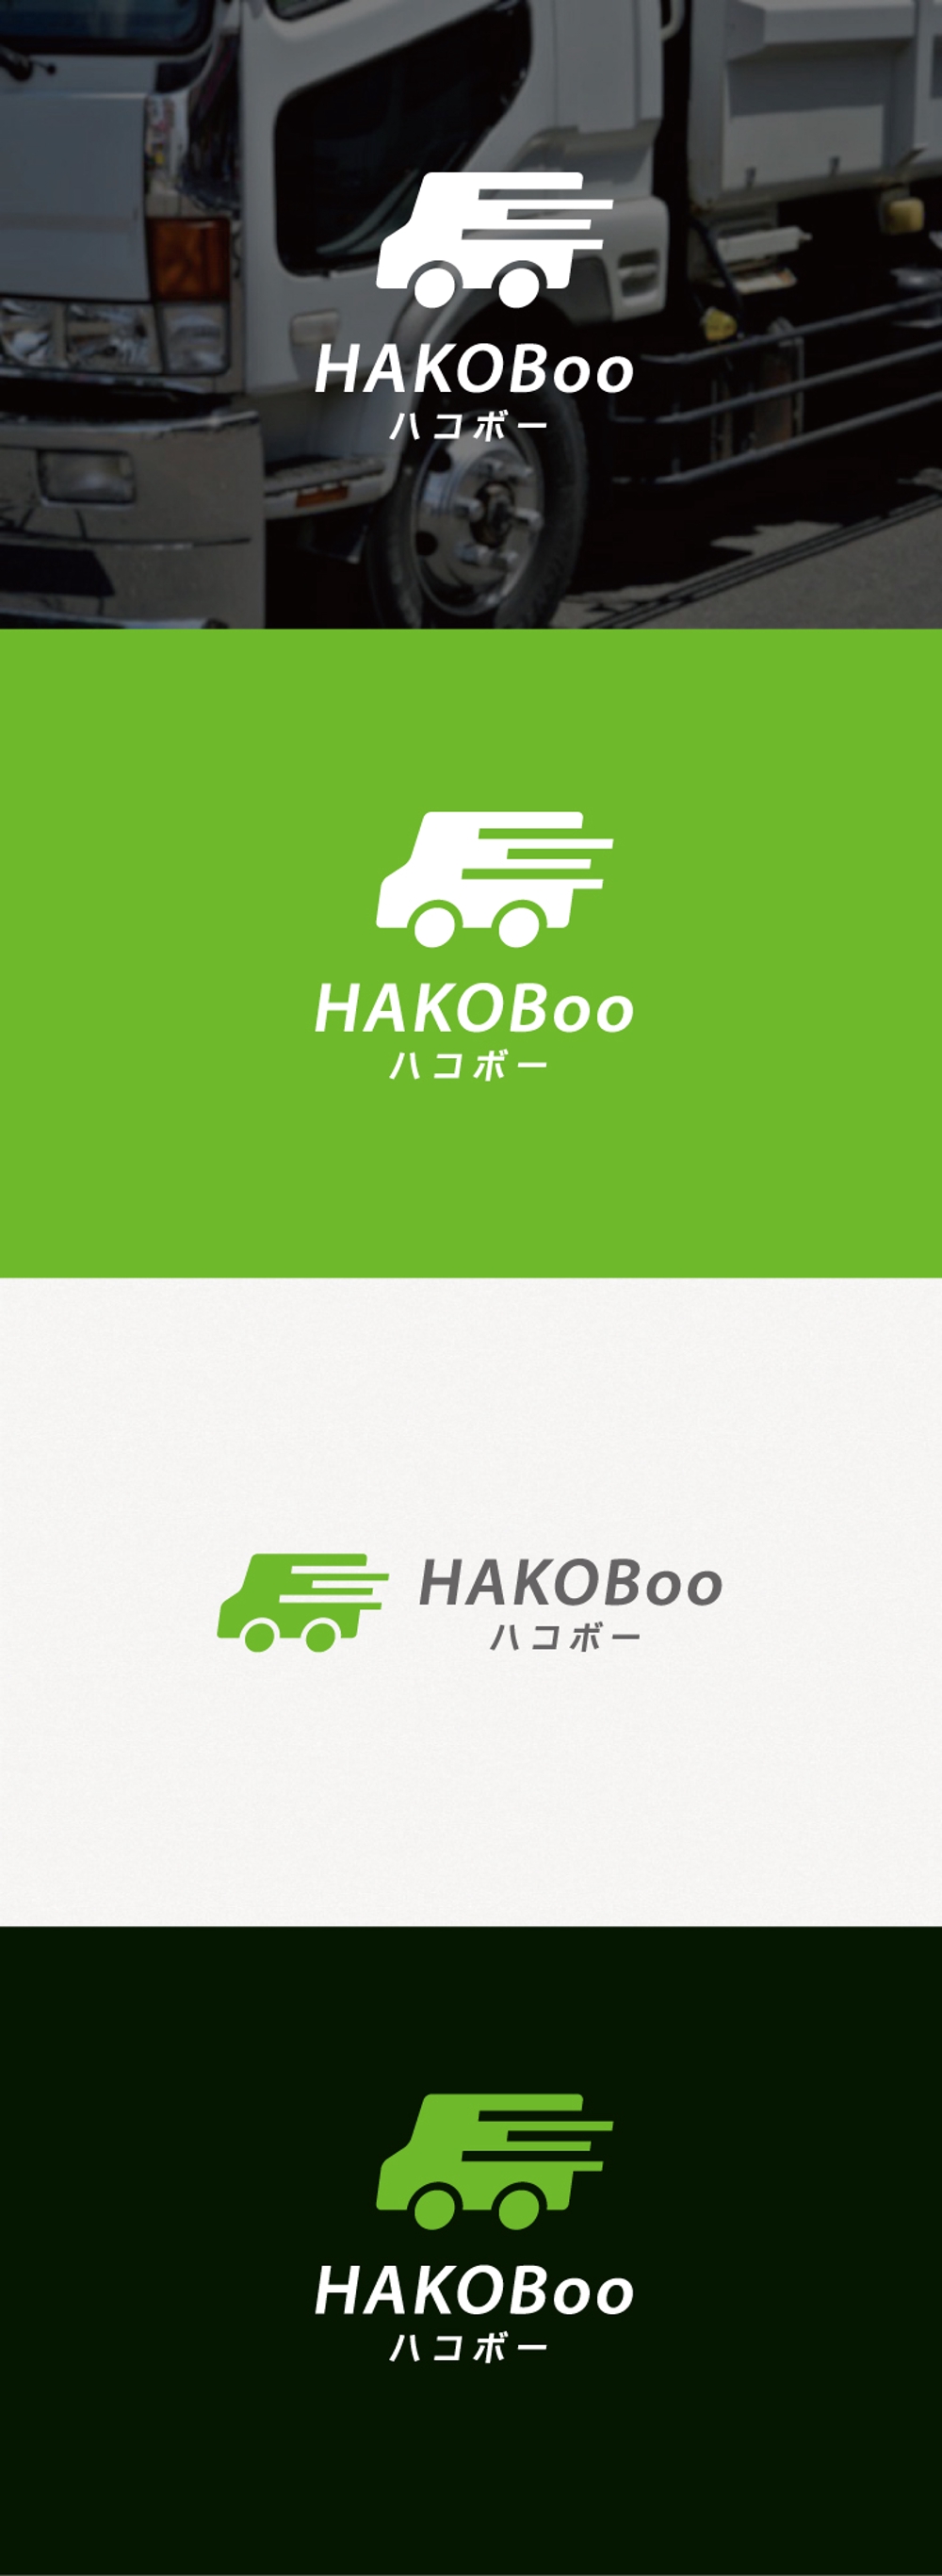 レンタカー情報を発信するウェブサイト「ハコボー」のロゴ作成